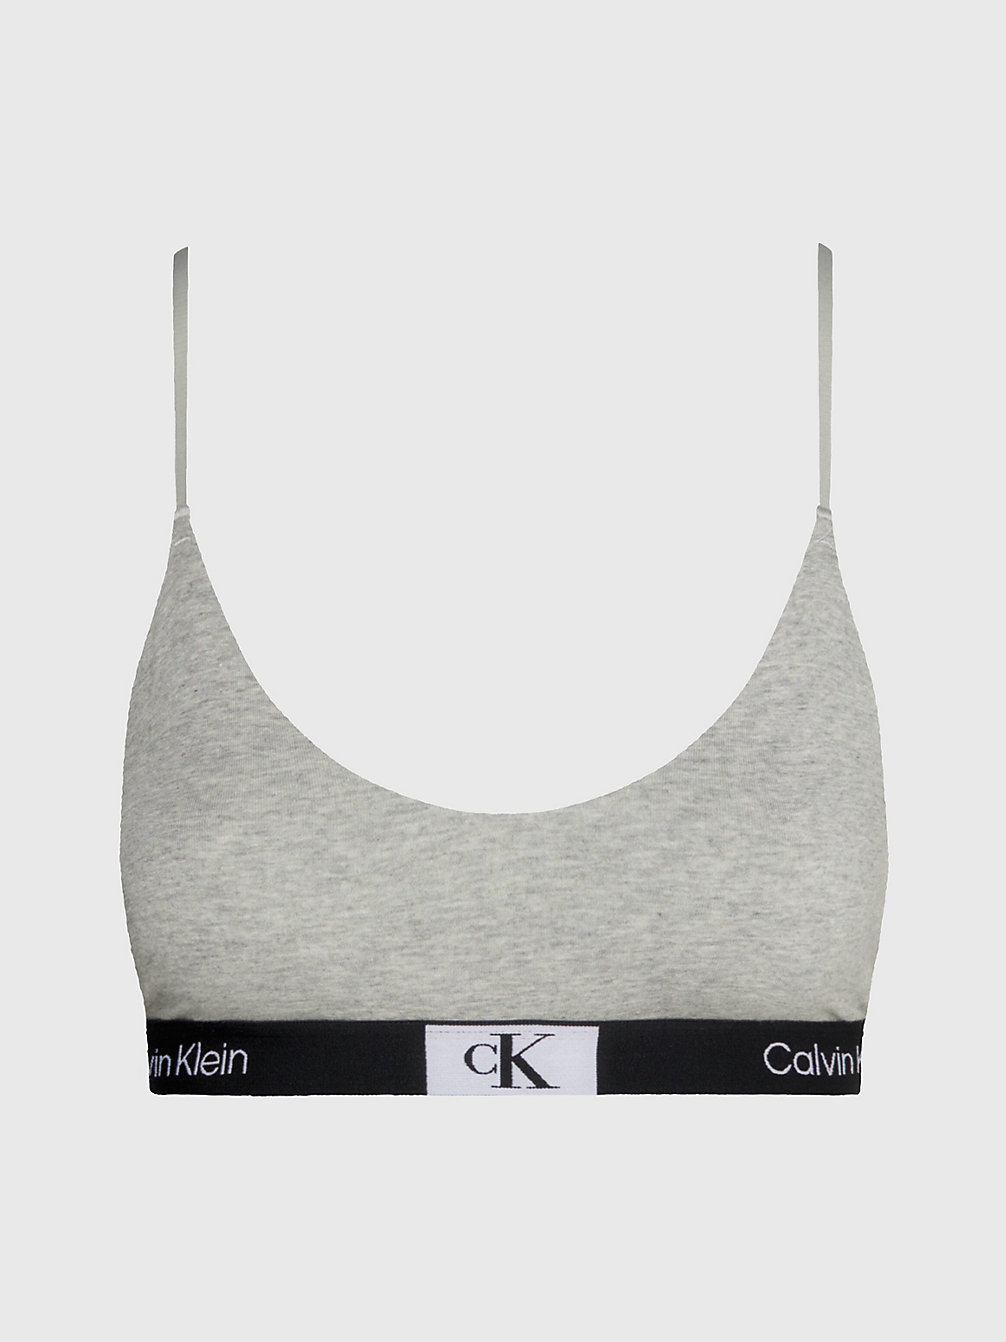 GREY HEATHER Brassière Ficelle - Ck96 undefined femmes Calvin Klein